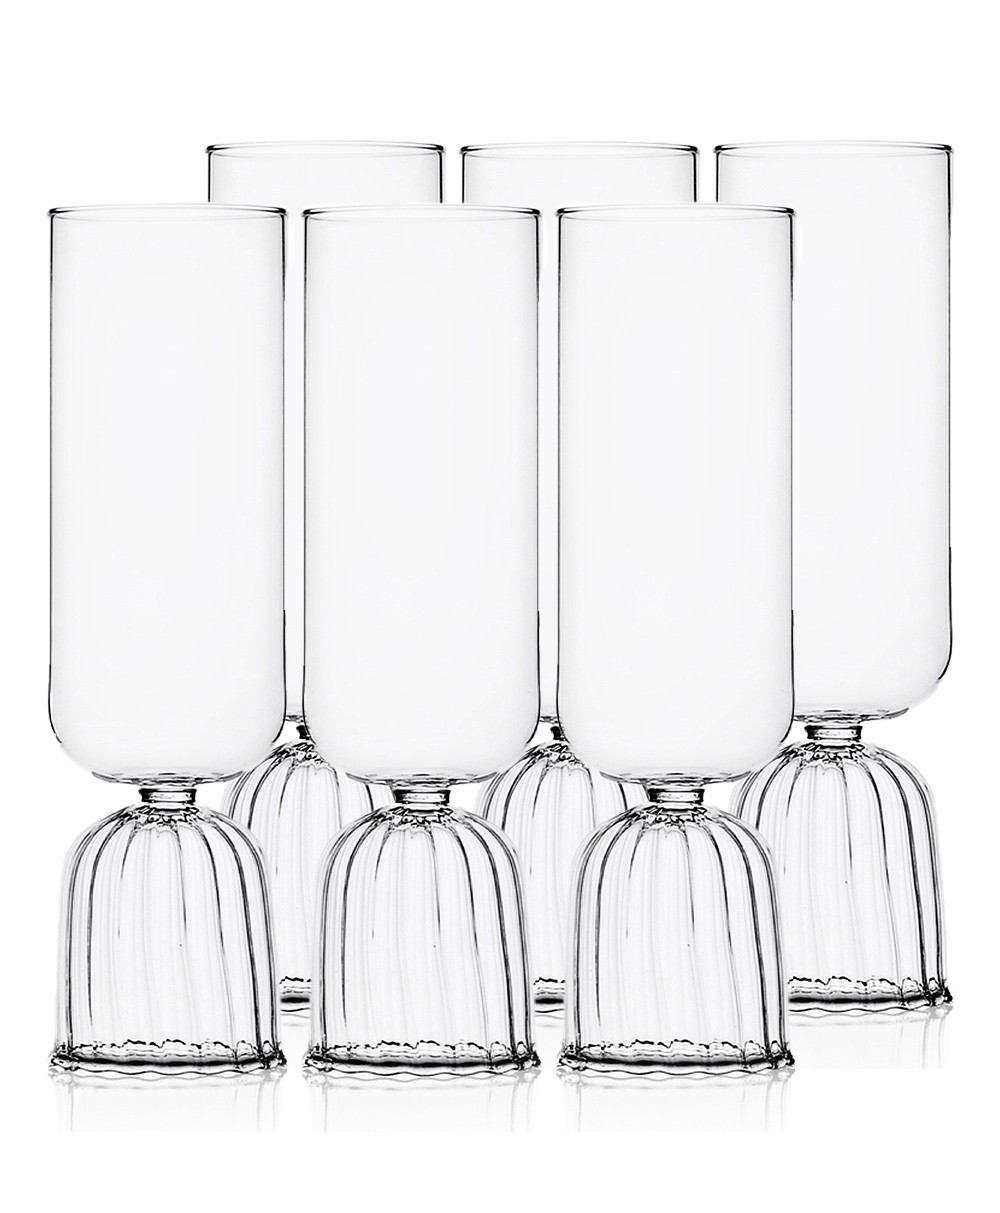 Produktbild "Tutu Flute-Champagne Glas" des Herstellers Ichendorf Milano im RAUM Conceptstore